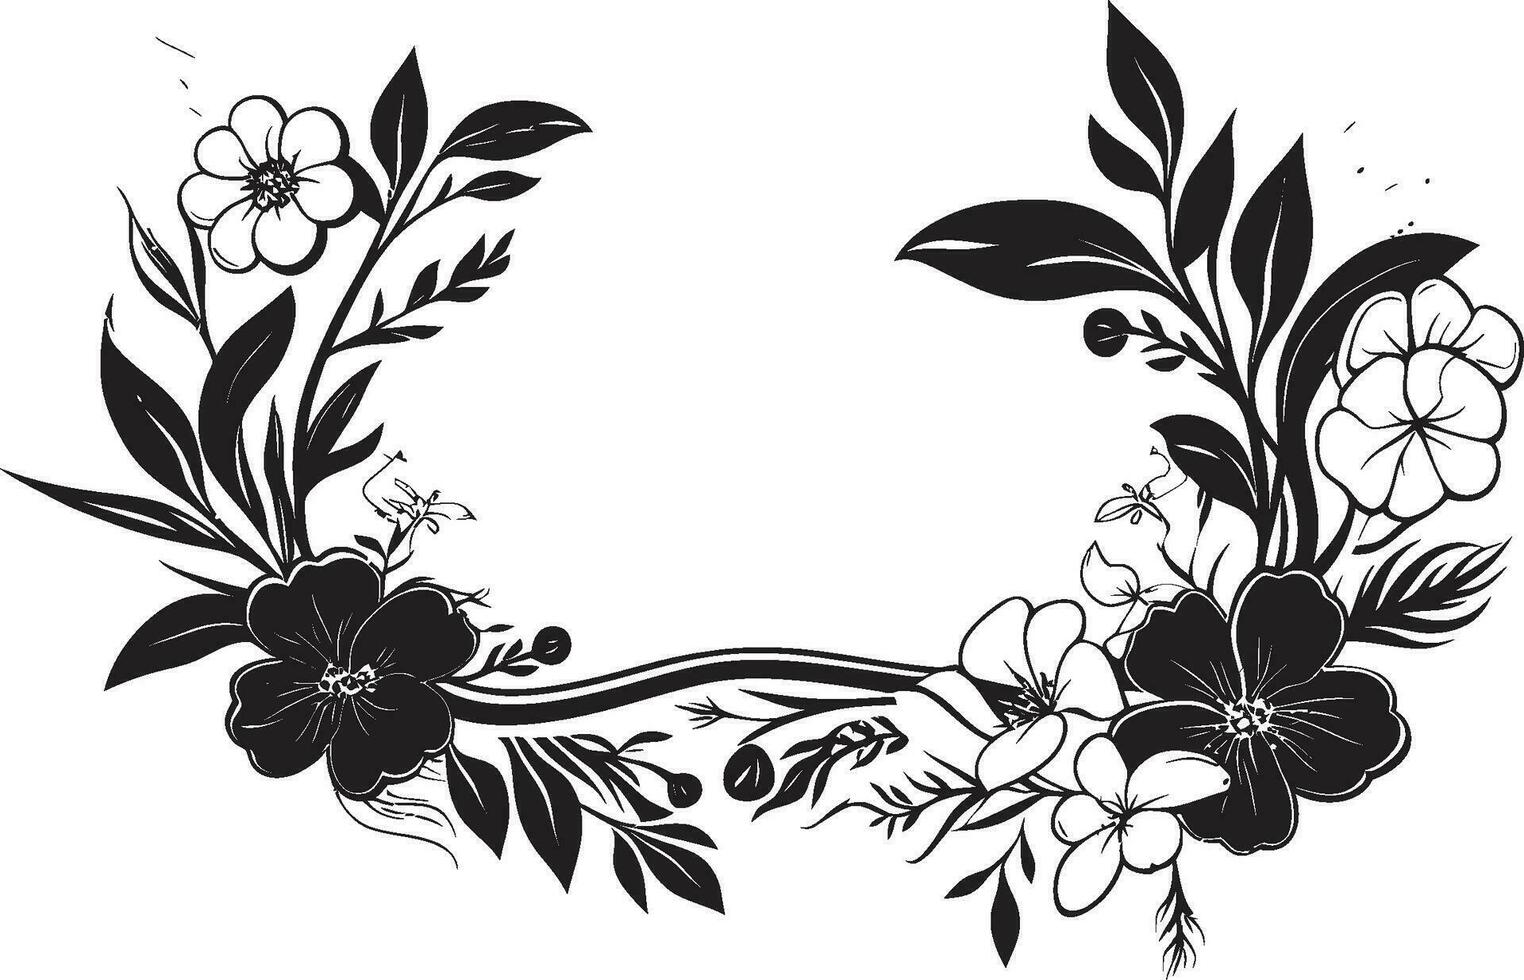 sofisticado medianoche floral recinto vector emblema caprichoso botánico marco negro floral diseño